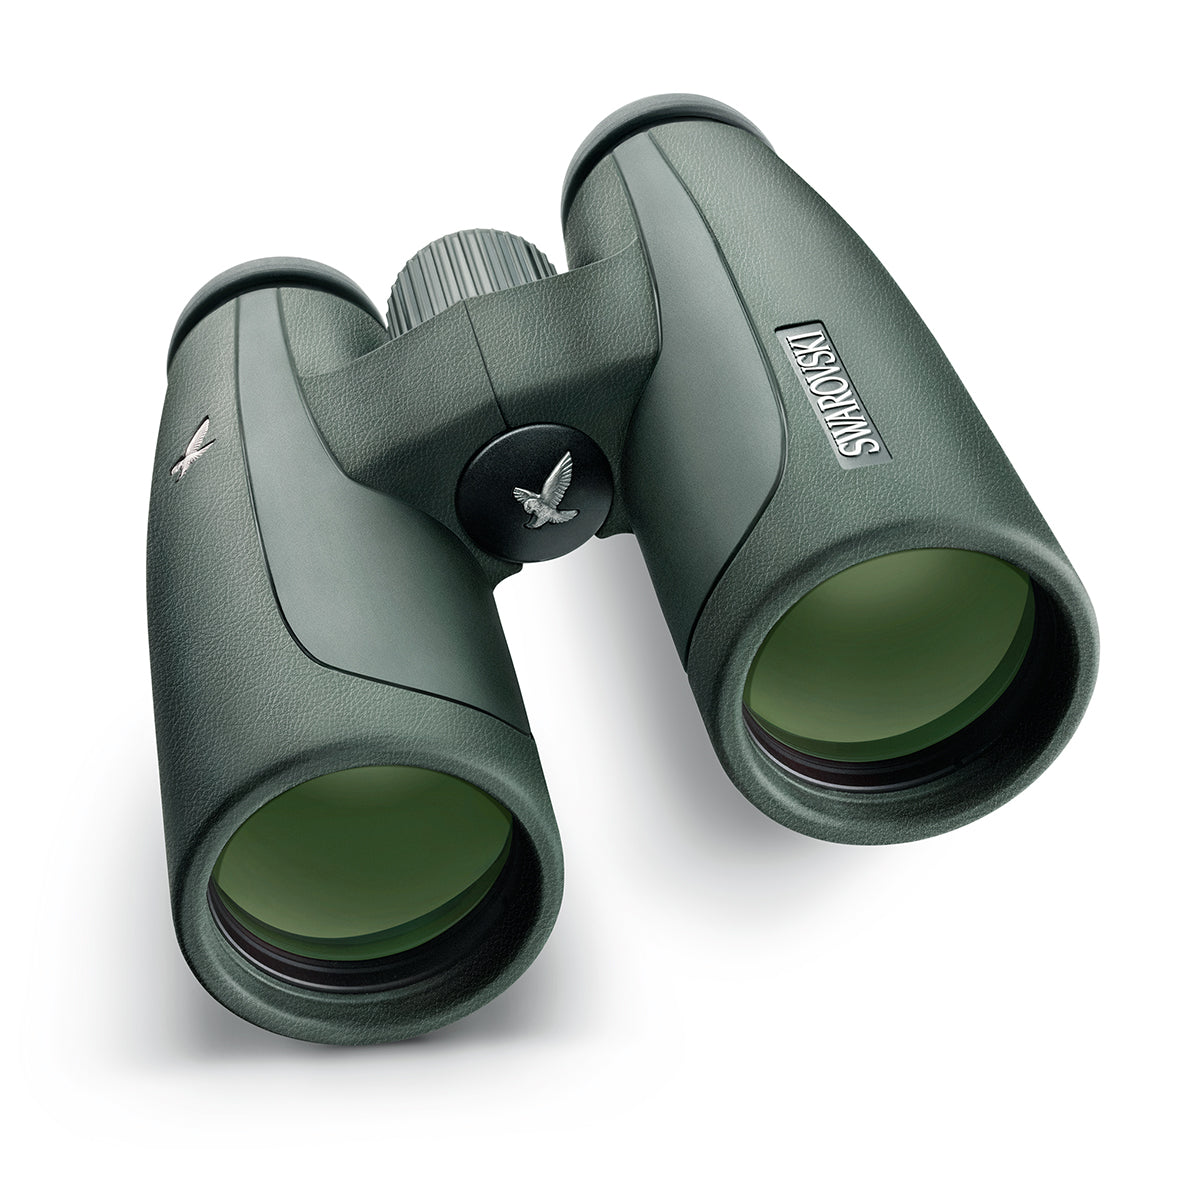 Swarovski SLC 10x42 W B Binocular by Swarovski Optik | Optics - goHUNT Shop